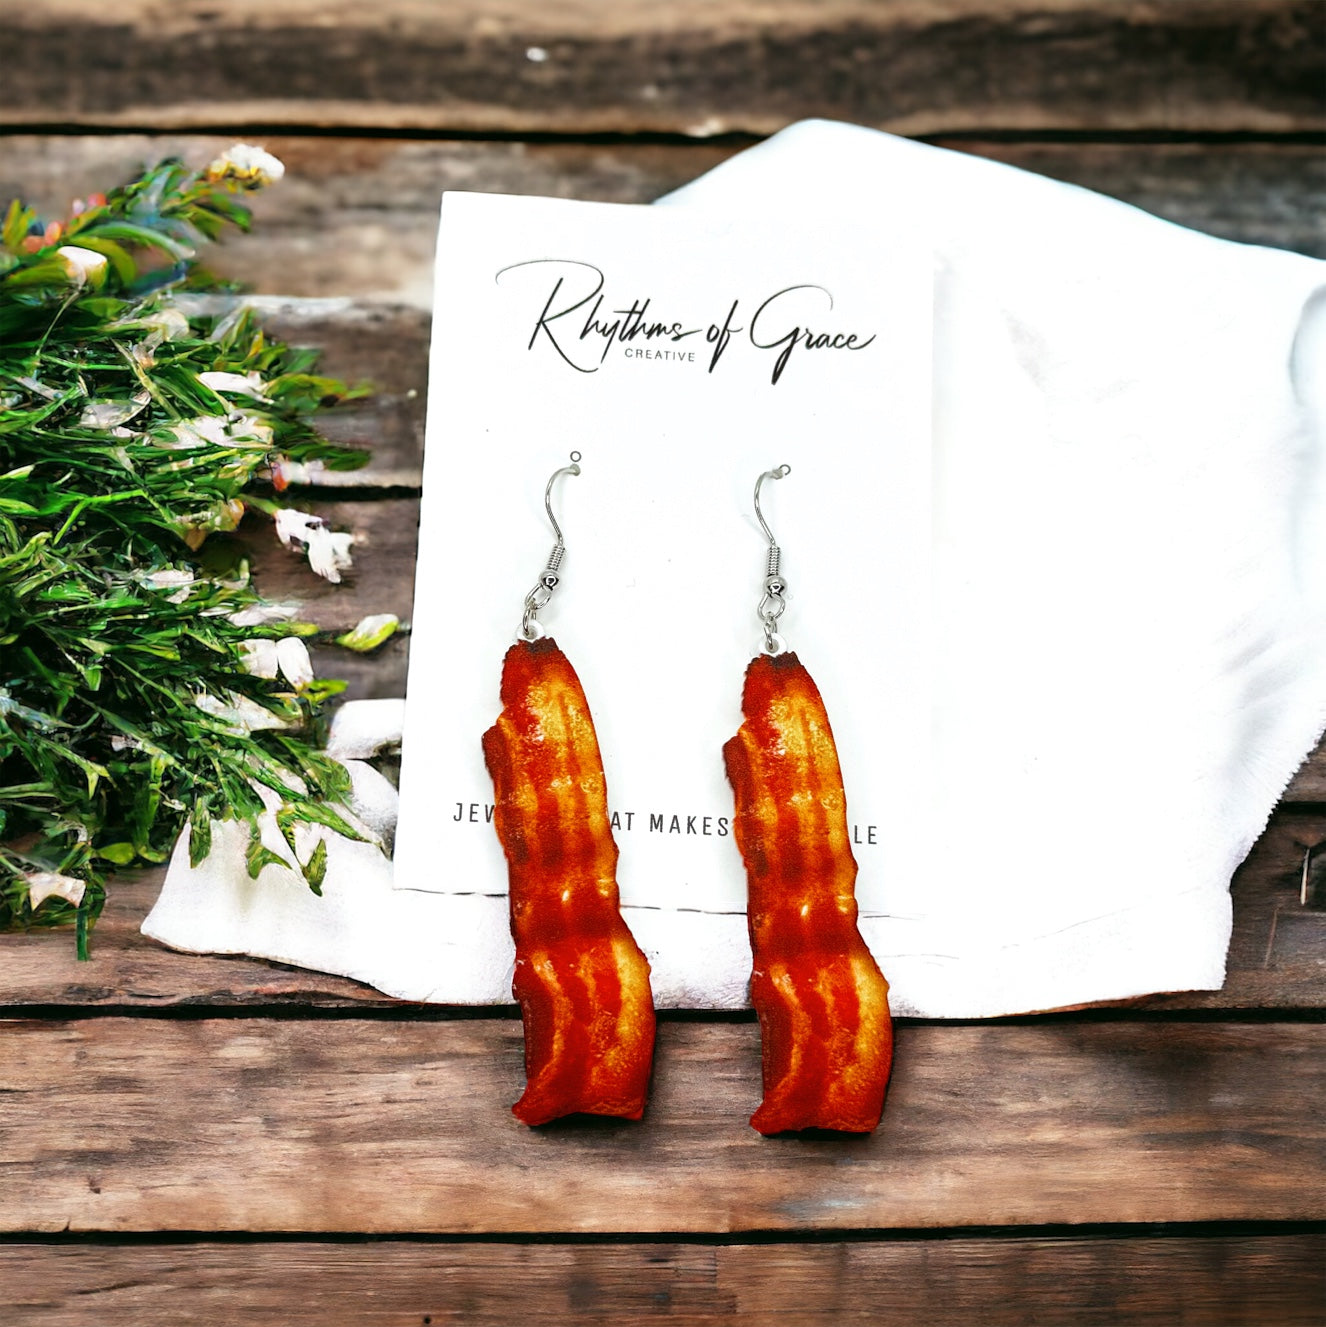 Bacon Earrings - Bacon Jewelry, Bacon Accessories, Handmade Earrings, BLT, Food Earrings, Bacon Lover